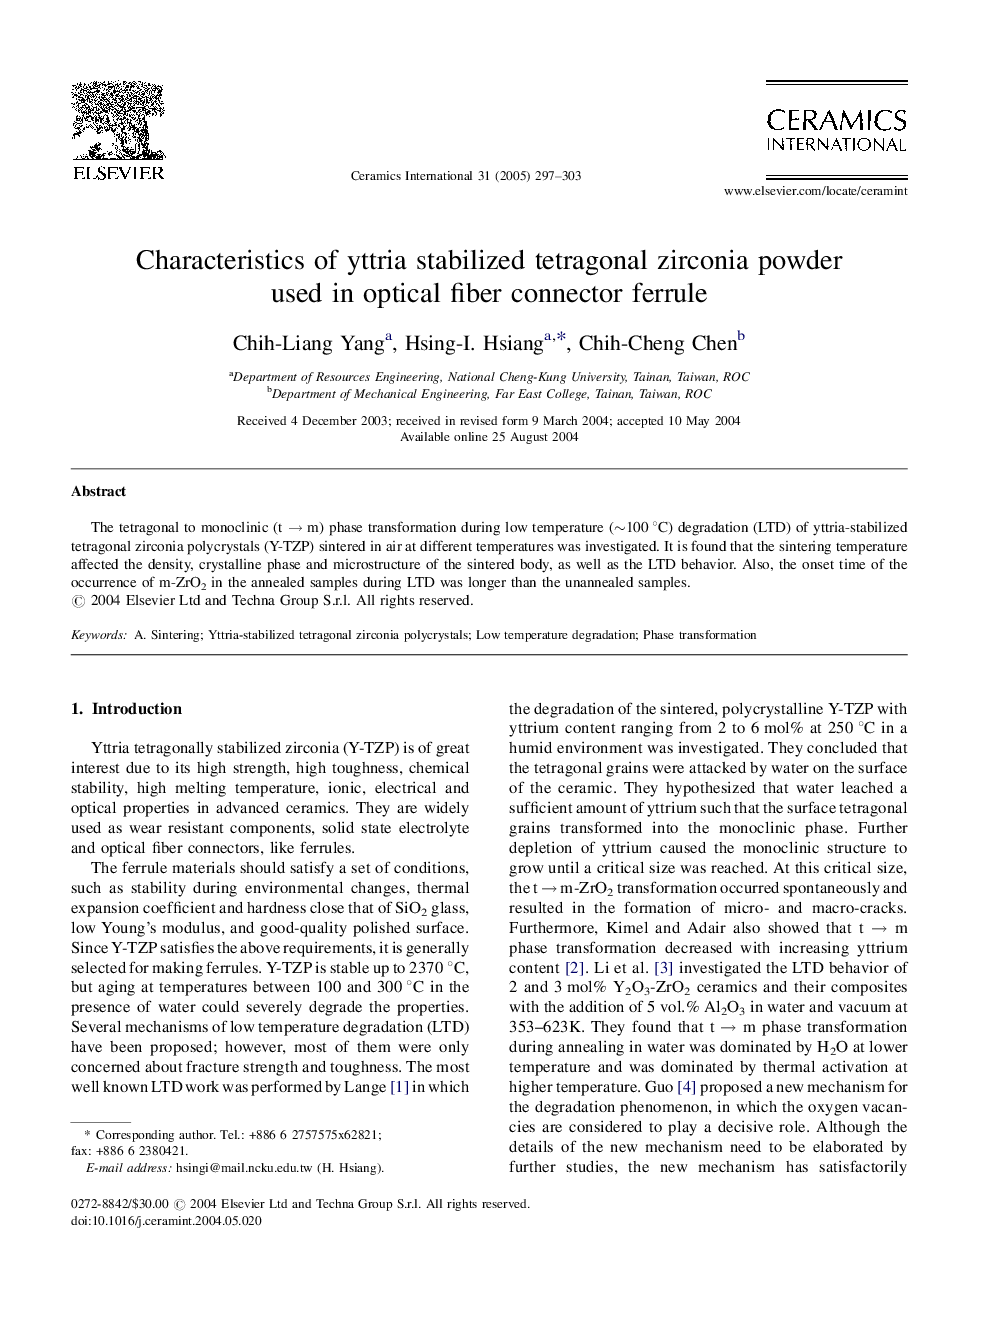 Characteristics of yttria stabilized tetragonal zirconia powder used in optical fiber connector ferrule